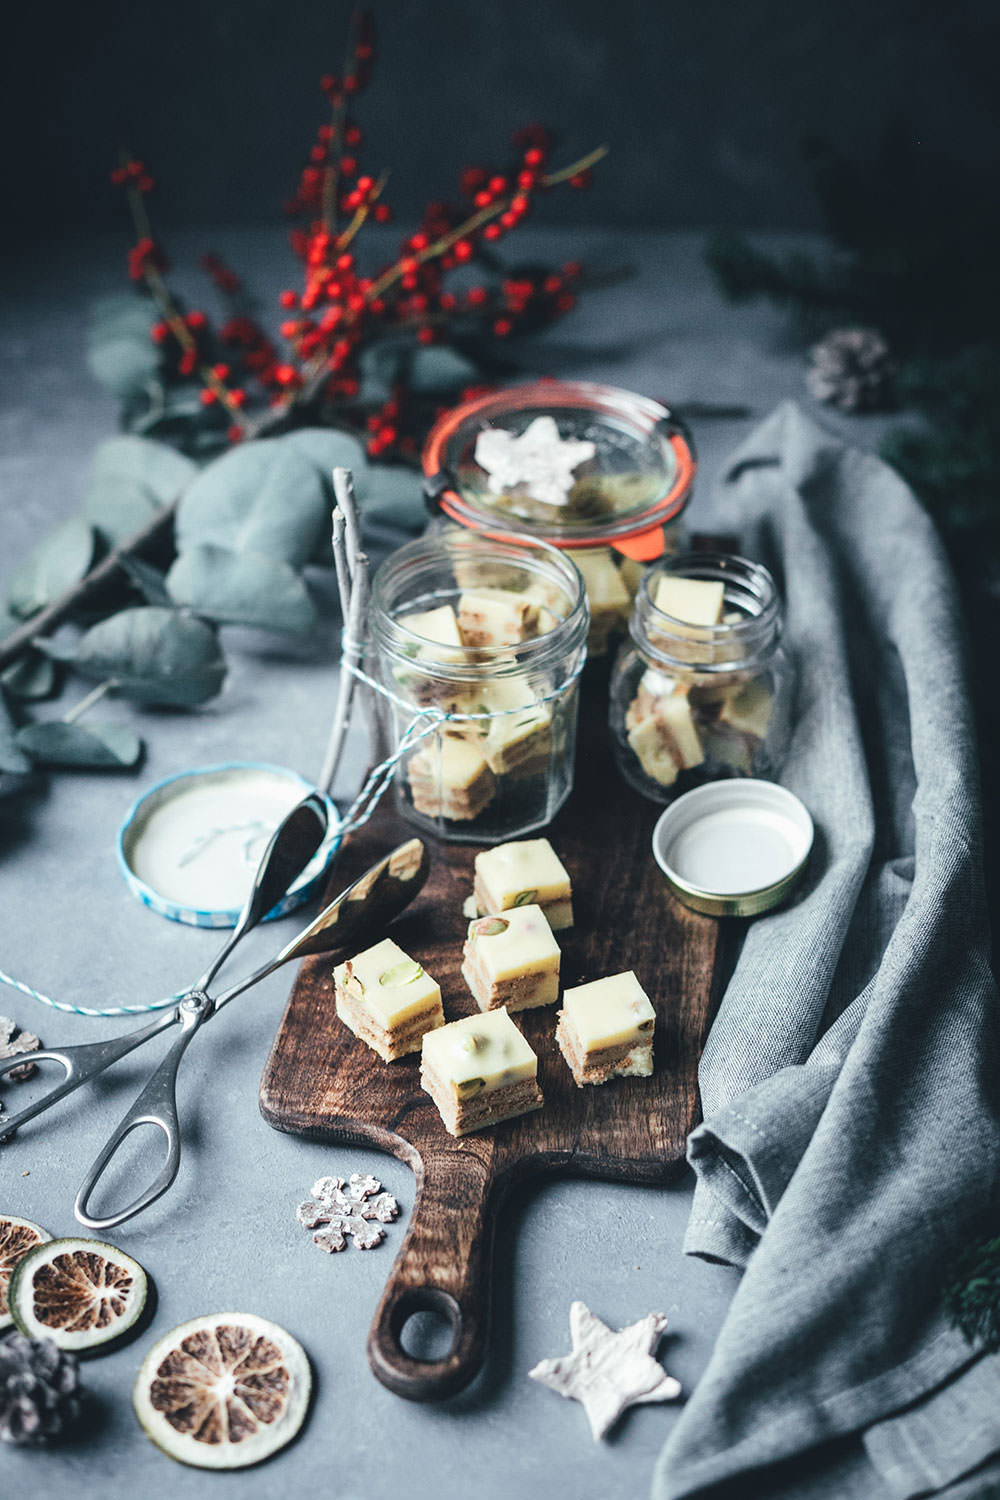 Weihnachtlicher Kalter Hund mit weißer Schokolade, Spekulatius und Pistazien | Geschenke aus der Küche für die Weihnachtszeit und den Plätzchenteller | moeyskitchen.com #kalterhund #kekskuchen #kalteschnauze #spekulatius #weisseschokolade #weihnachtsplätzchen #rezepte #foodblogger #weihnachten #weihnachtskekse #geschenkausderküche #rezept